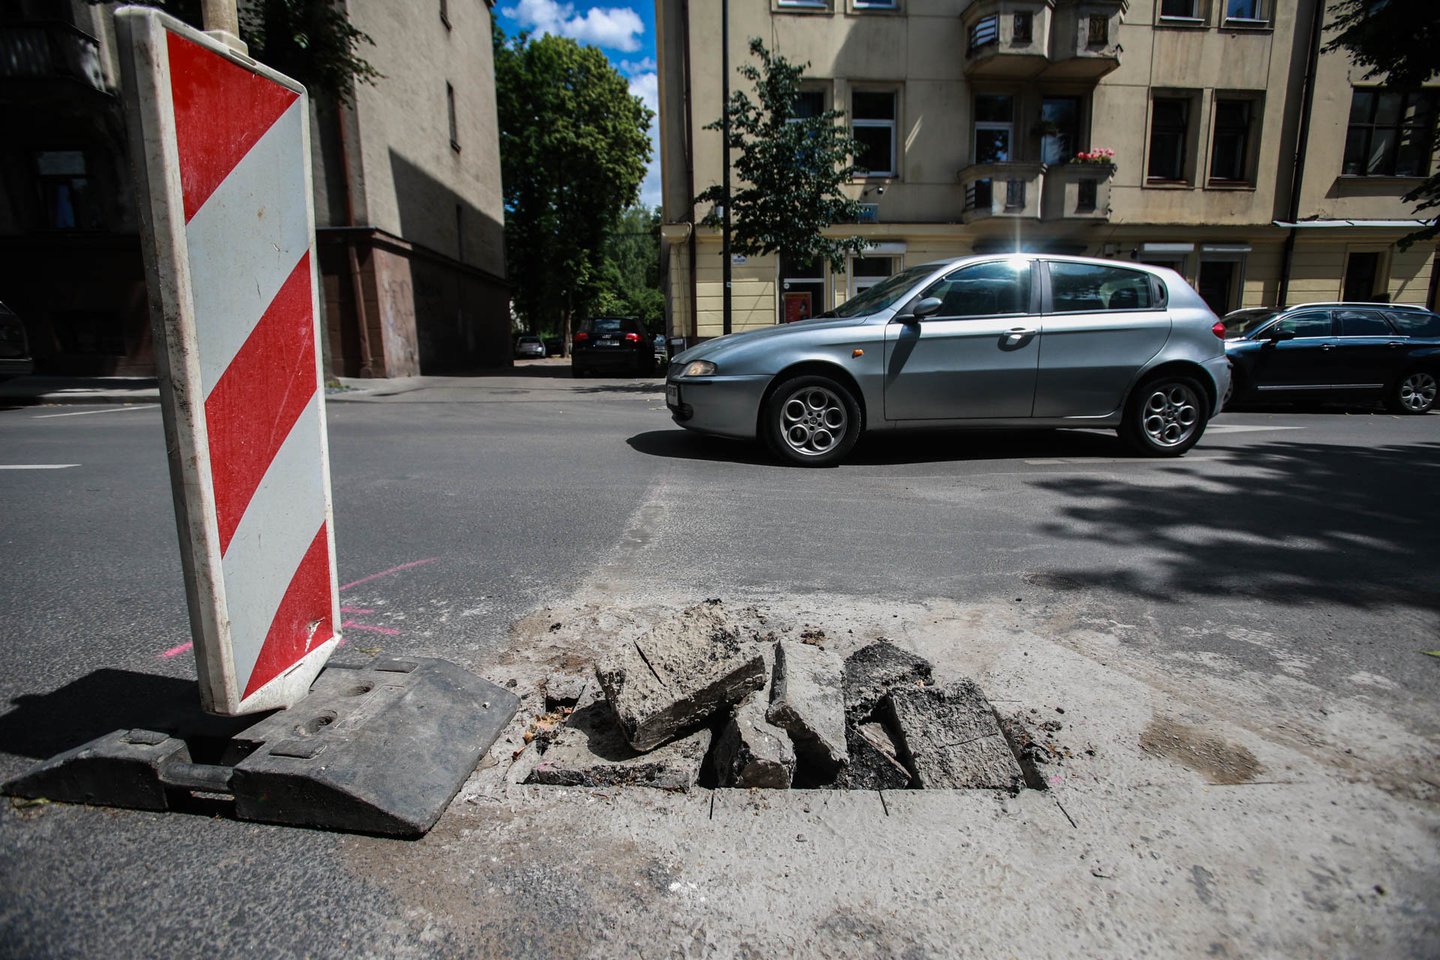  Naujai sutvarkytose gatvėse, kuriomis taip didžiavosi Kauno valdžia, po lietaus viena po kitos ėmė rastis didžiulės duobės. <br> G. Bitvinsko nuotr.